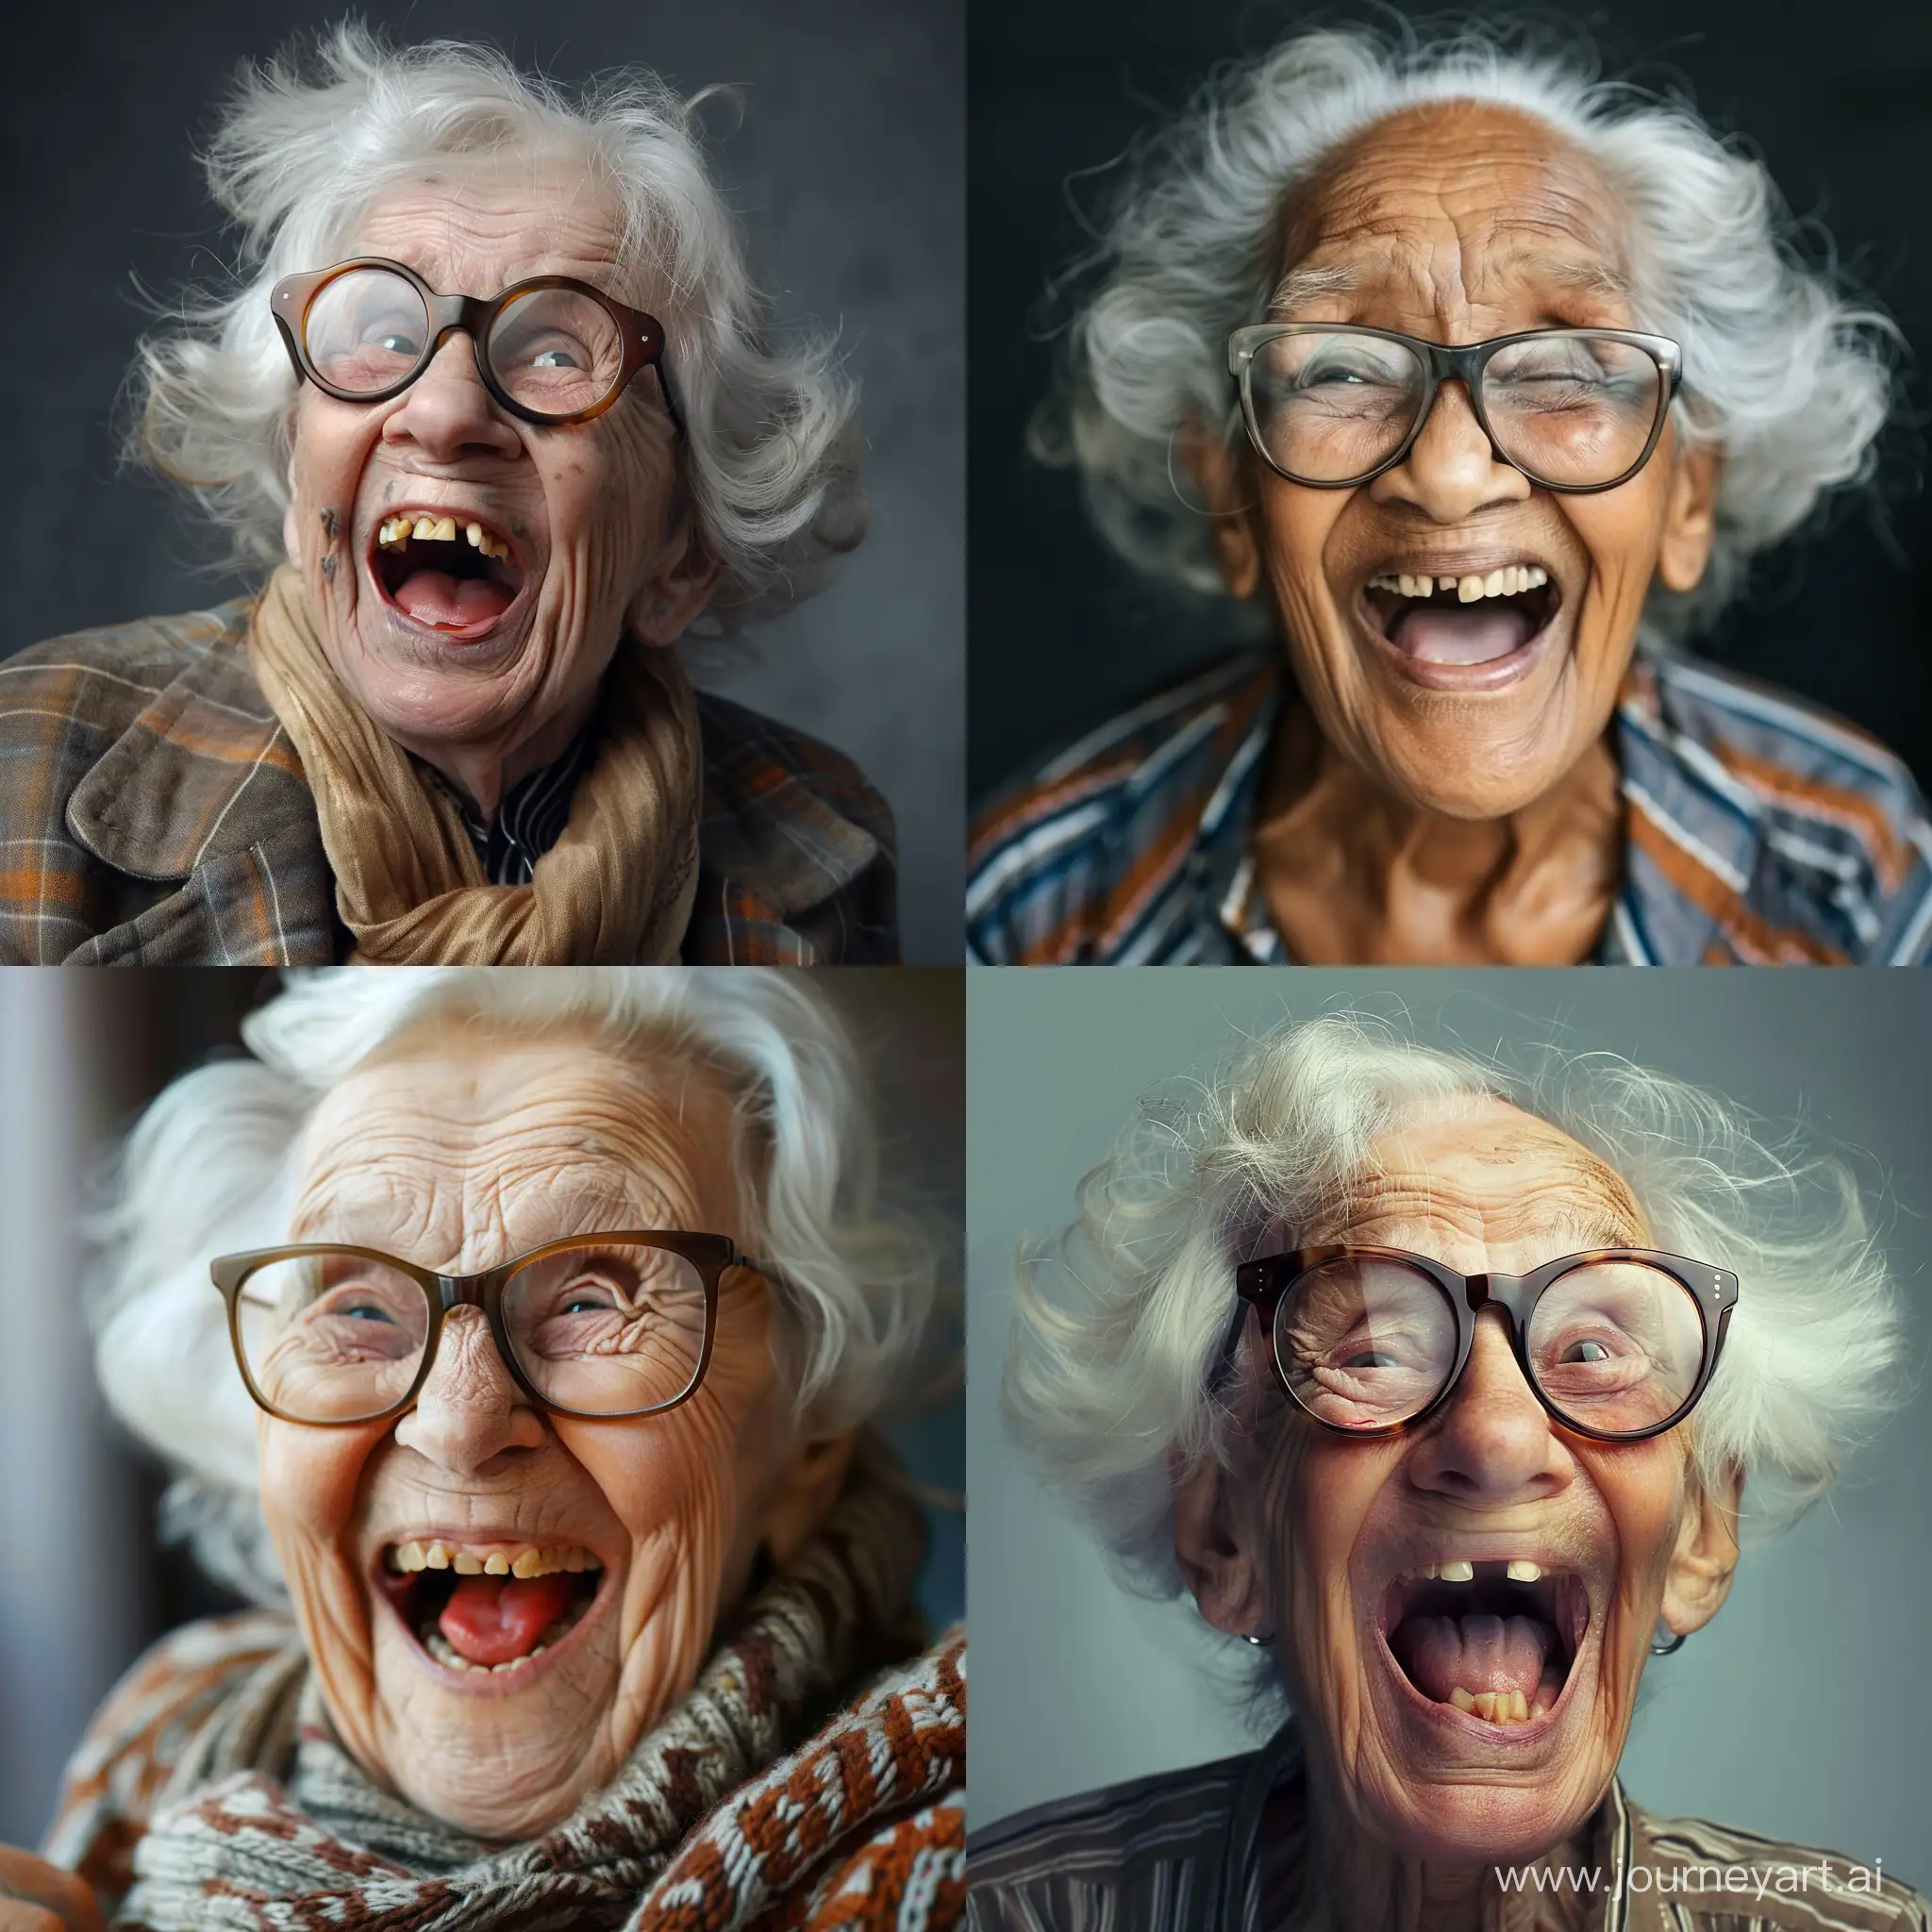 Старая пожилая негритянка большие очки смеётся открыв широко рот крутит лолохуб